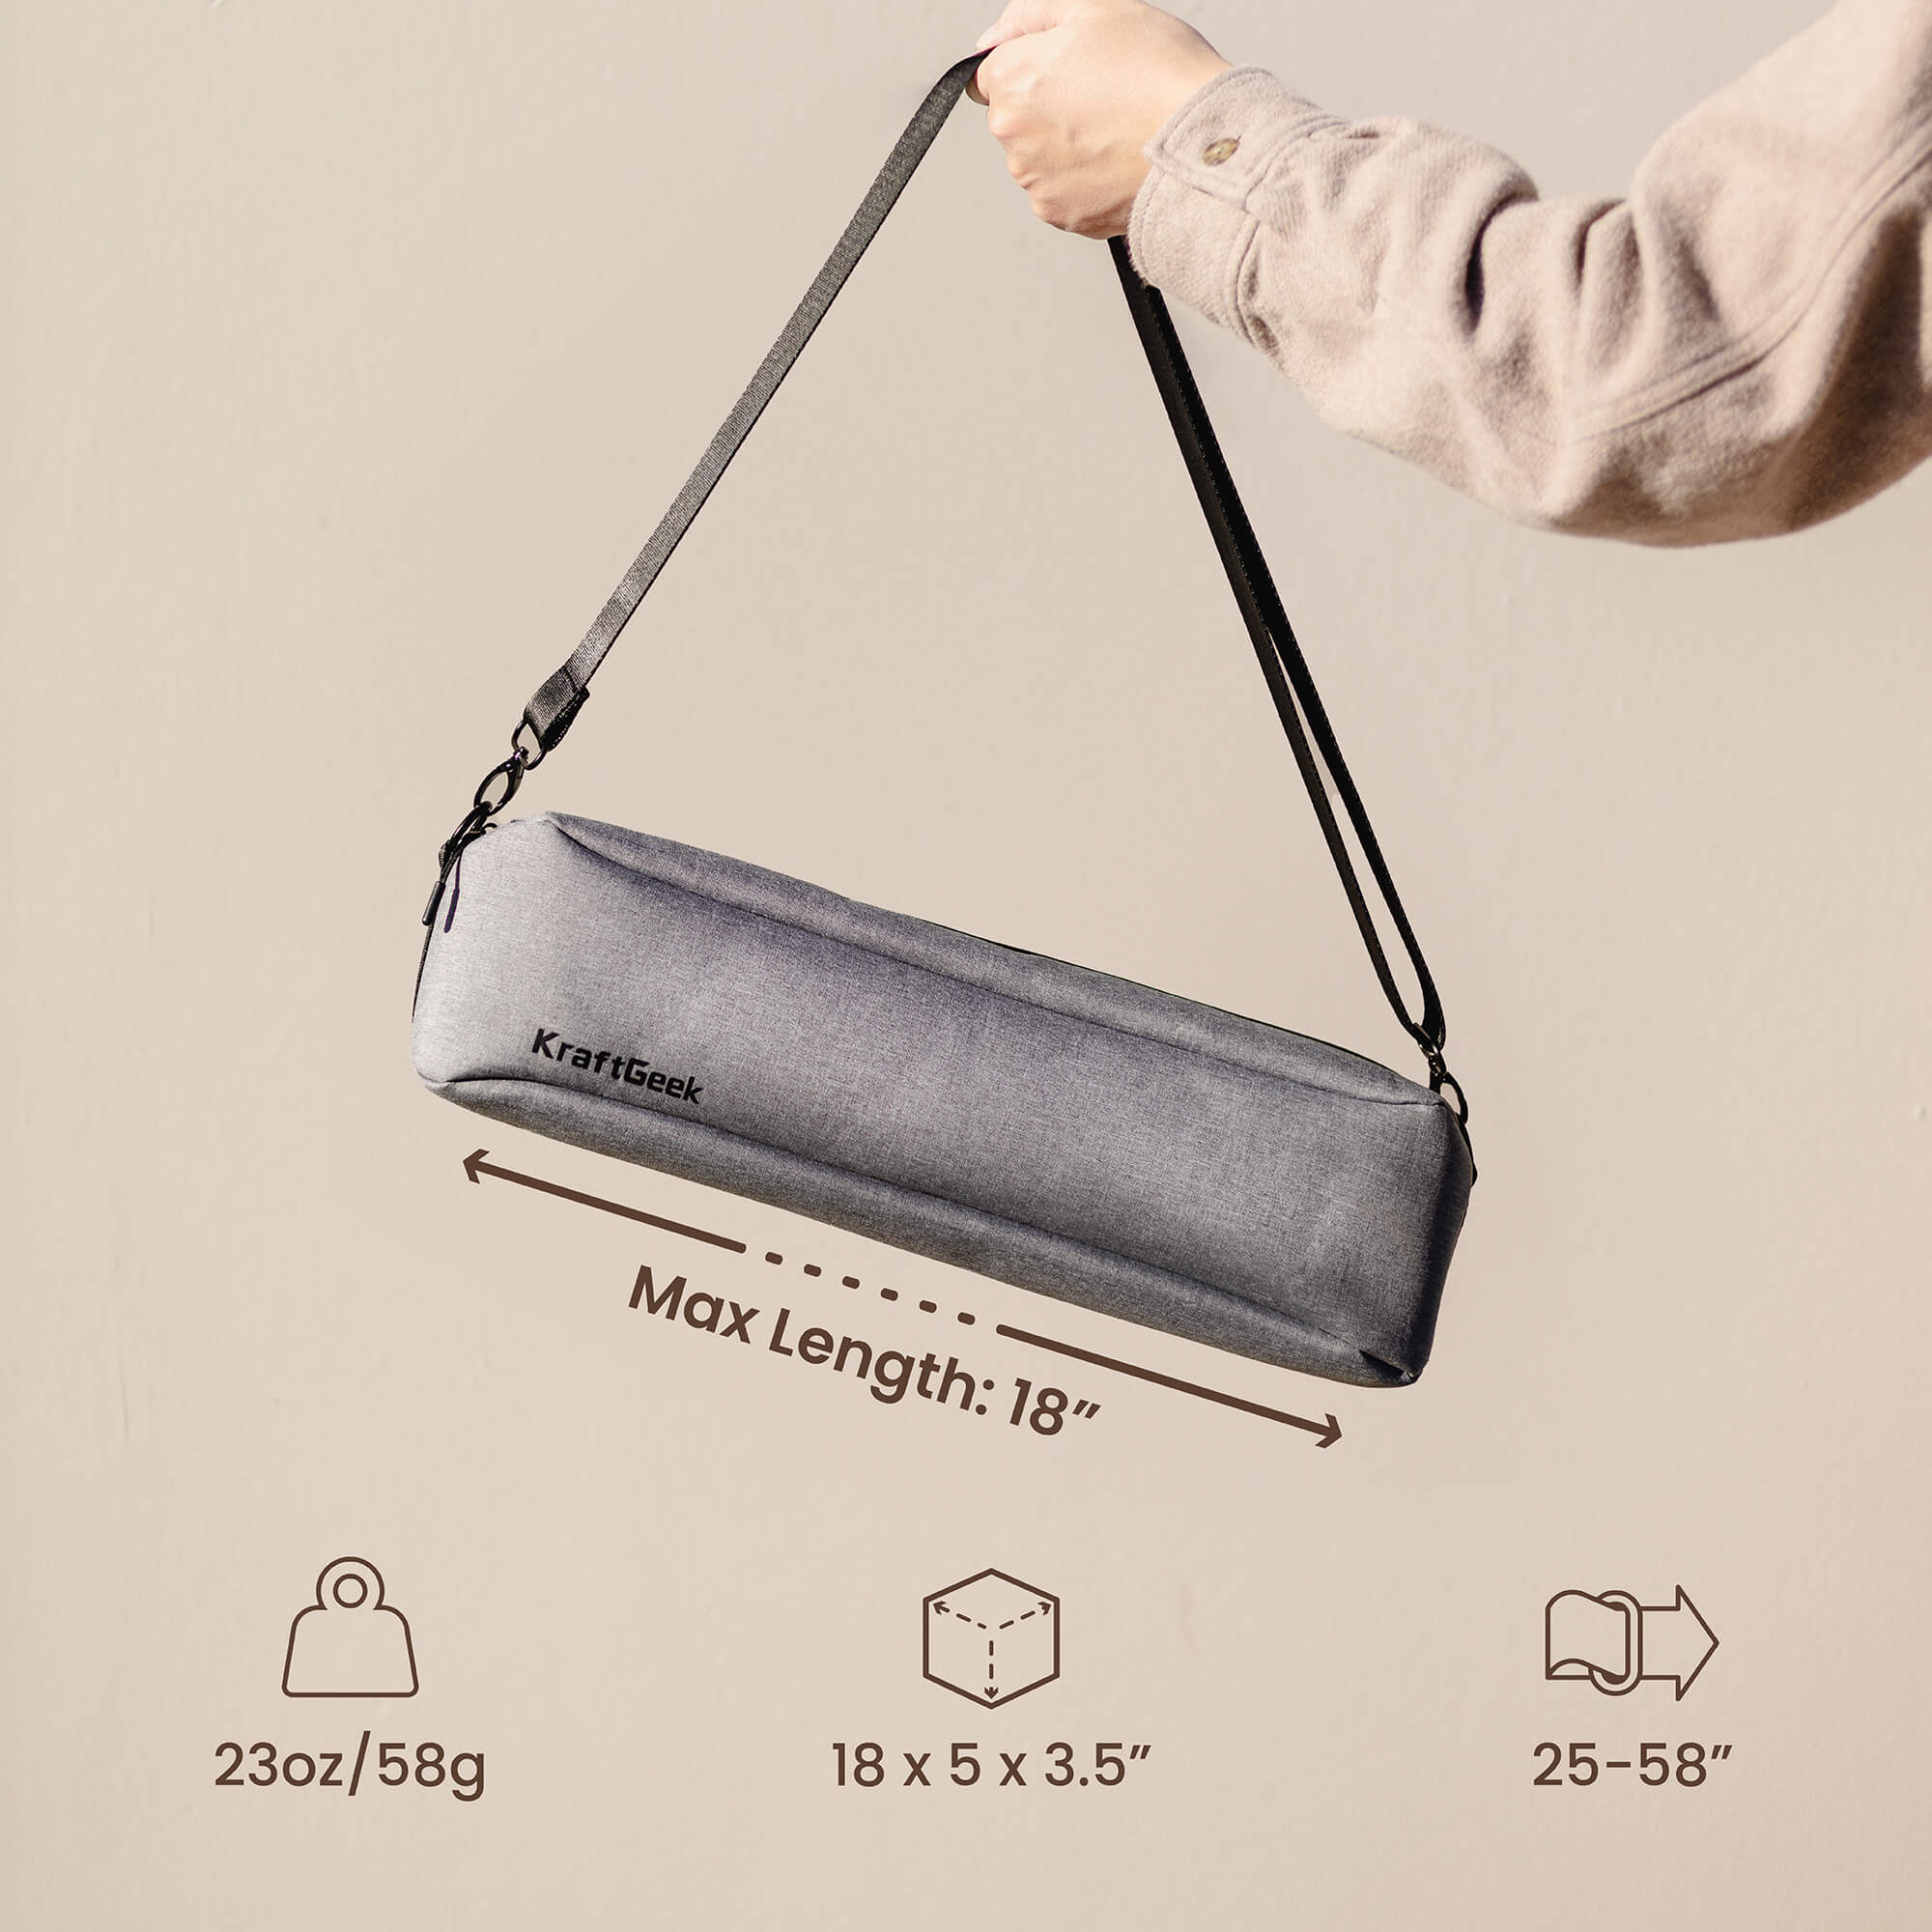 Portable Tripod Bag